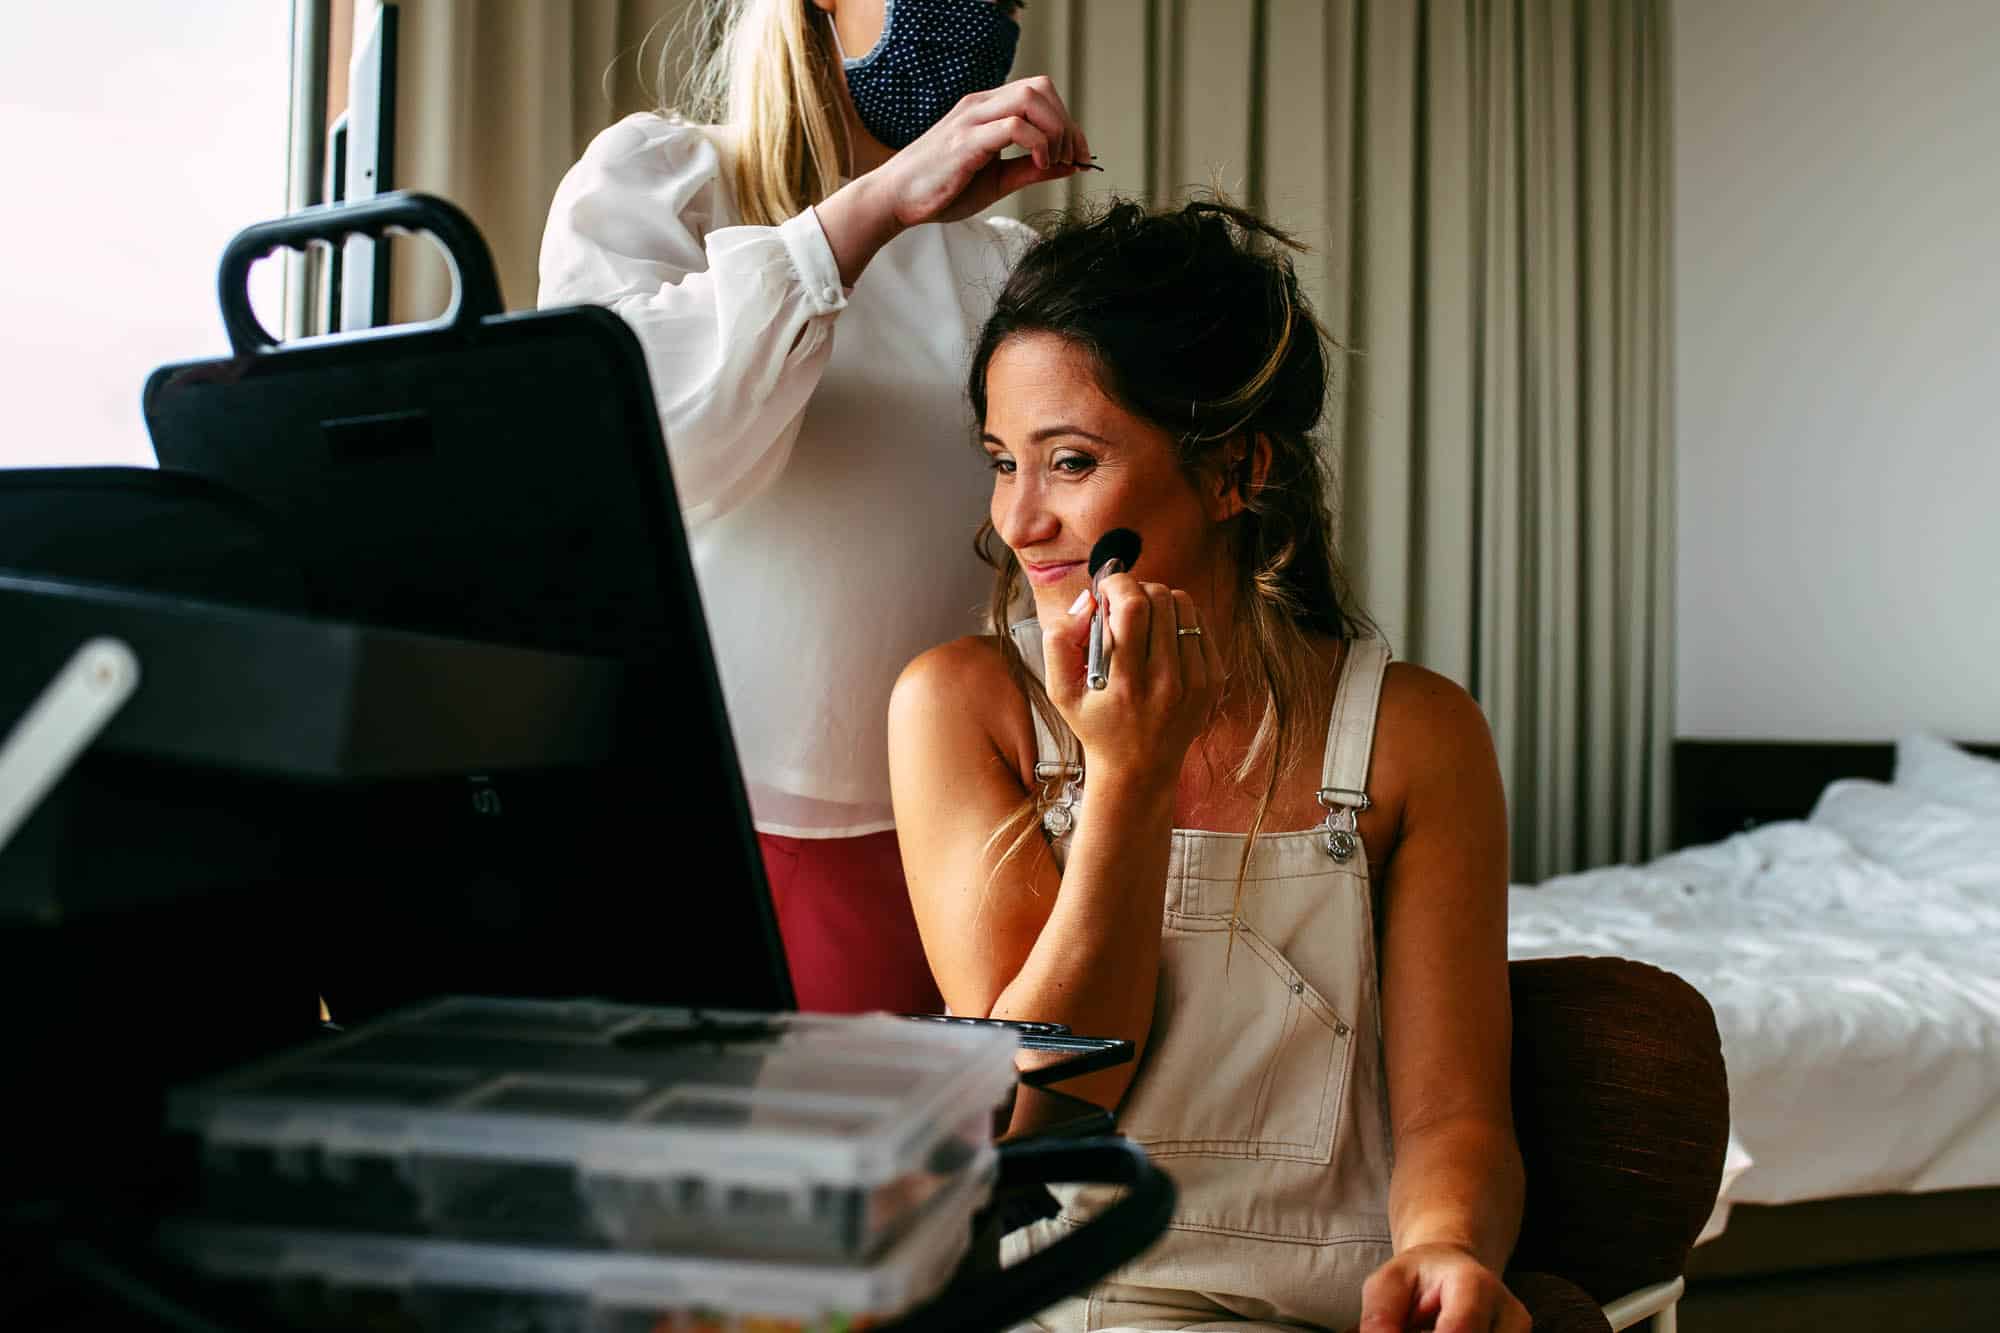 Een vrouw laat haar bruidsmake-up doen in een hotelkamer.